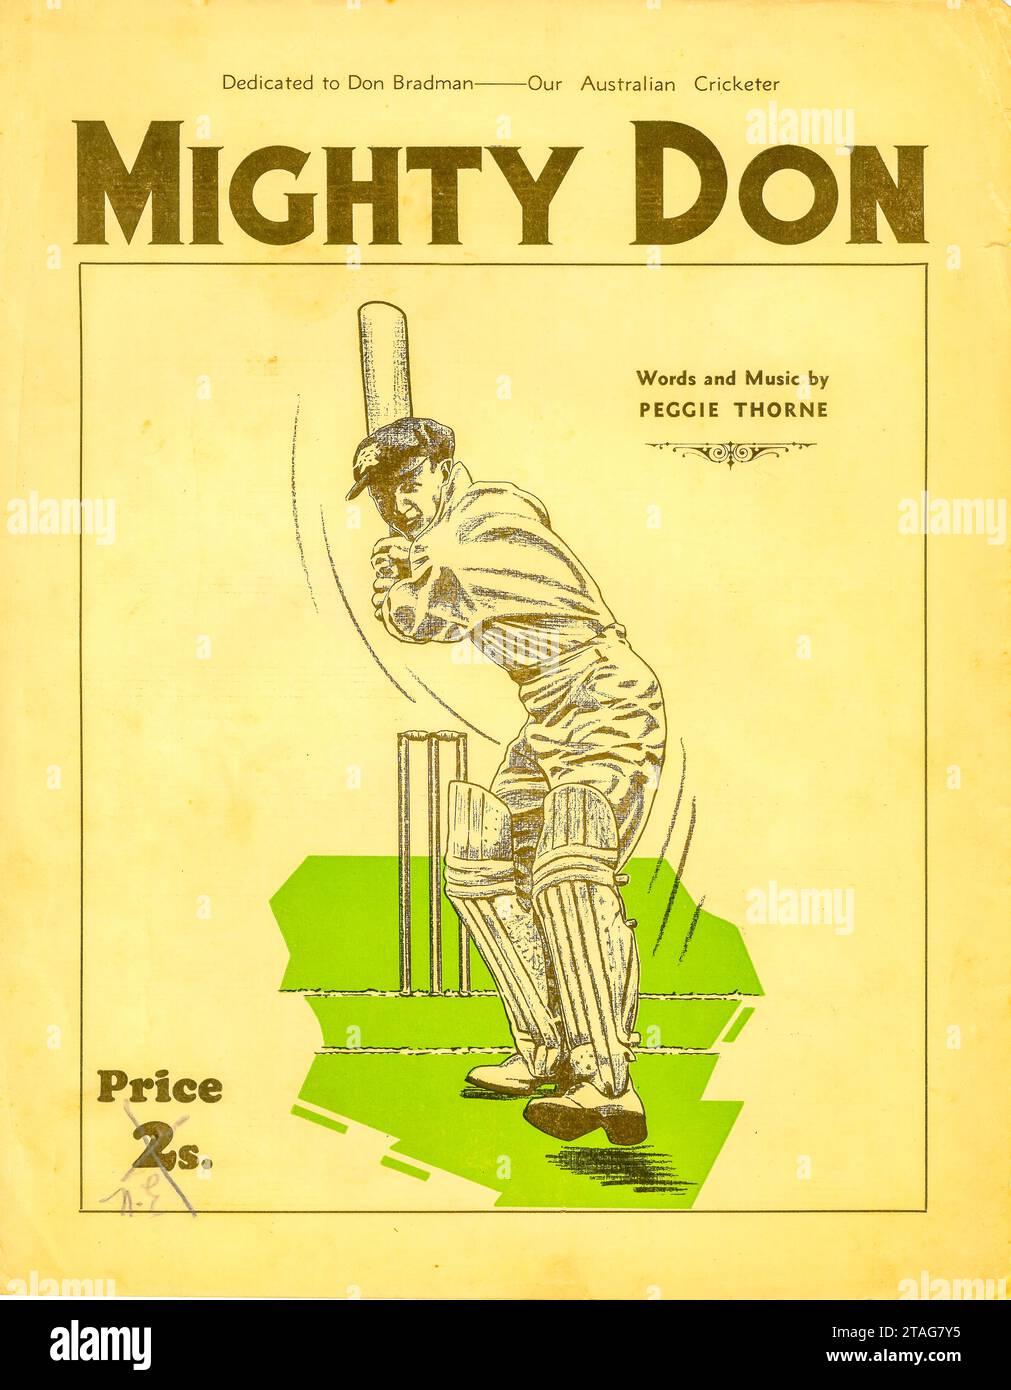 Das Cover einer Notenschrift Mighty Don, Words and Music von Peggie Thorne zwischen 1945 und 1950 in Sydney, Australien. Sir Donald Bradman (The Don) 1908-2001 wird als Australiens und möglicherweise der größte Schlagmann der Welt gefeiert, mit einer durchschnittlichen Punktzahl von 99,4. Stockfoto